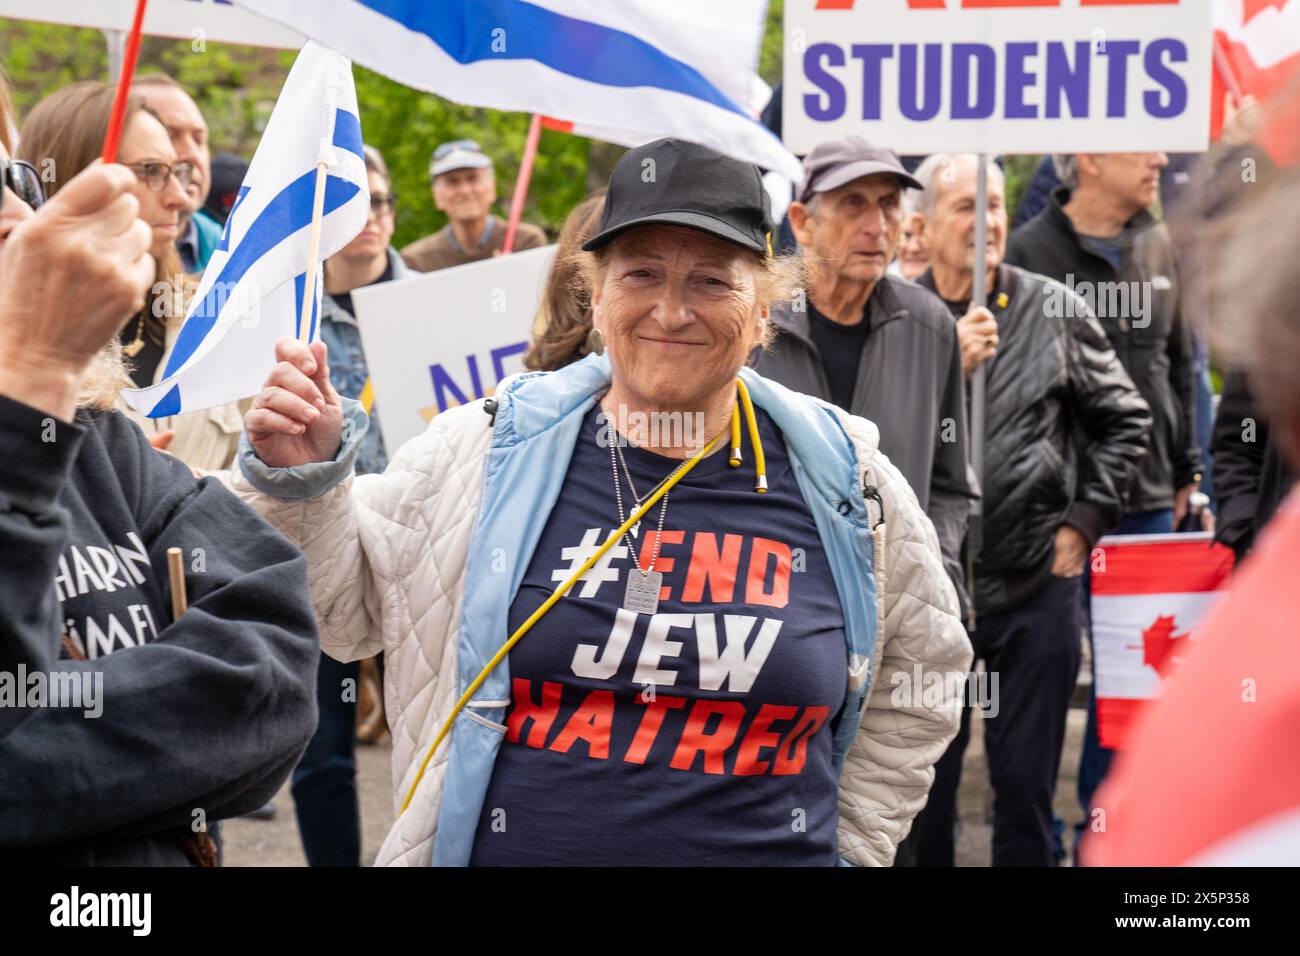 5 maggio 2024, Toronto, Ontario, Canada: Donna che indossa una camicia scritta su ''#End Jew Hatred''' prende parte alla manifestazione contro l'odio. Gli studenti ebrei dei campus universitari in Nord America e in Europa hanno espresso preoccupazione per l'esistenza dell'antisemitismo da parte di gruppi studenteschi filo-palestinesi. Questi gruppi spesso mostrano sentimenti anti-israeliani e anti-sionisti attraverso cartelli e retorica, talvolta anche sostenendo la distruzione dello Stato di Israele. Tali azioni contribuiscono a un ambiente in cui gli studenti ebrei si sentono presi di mira ed emarginati, ignorando il loro legittimo legame storico Foto Stock